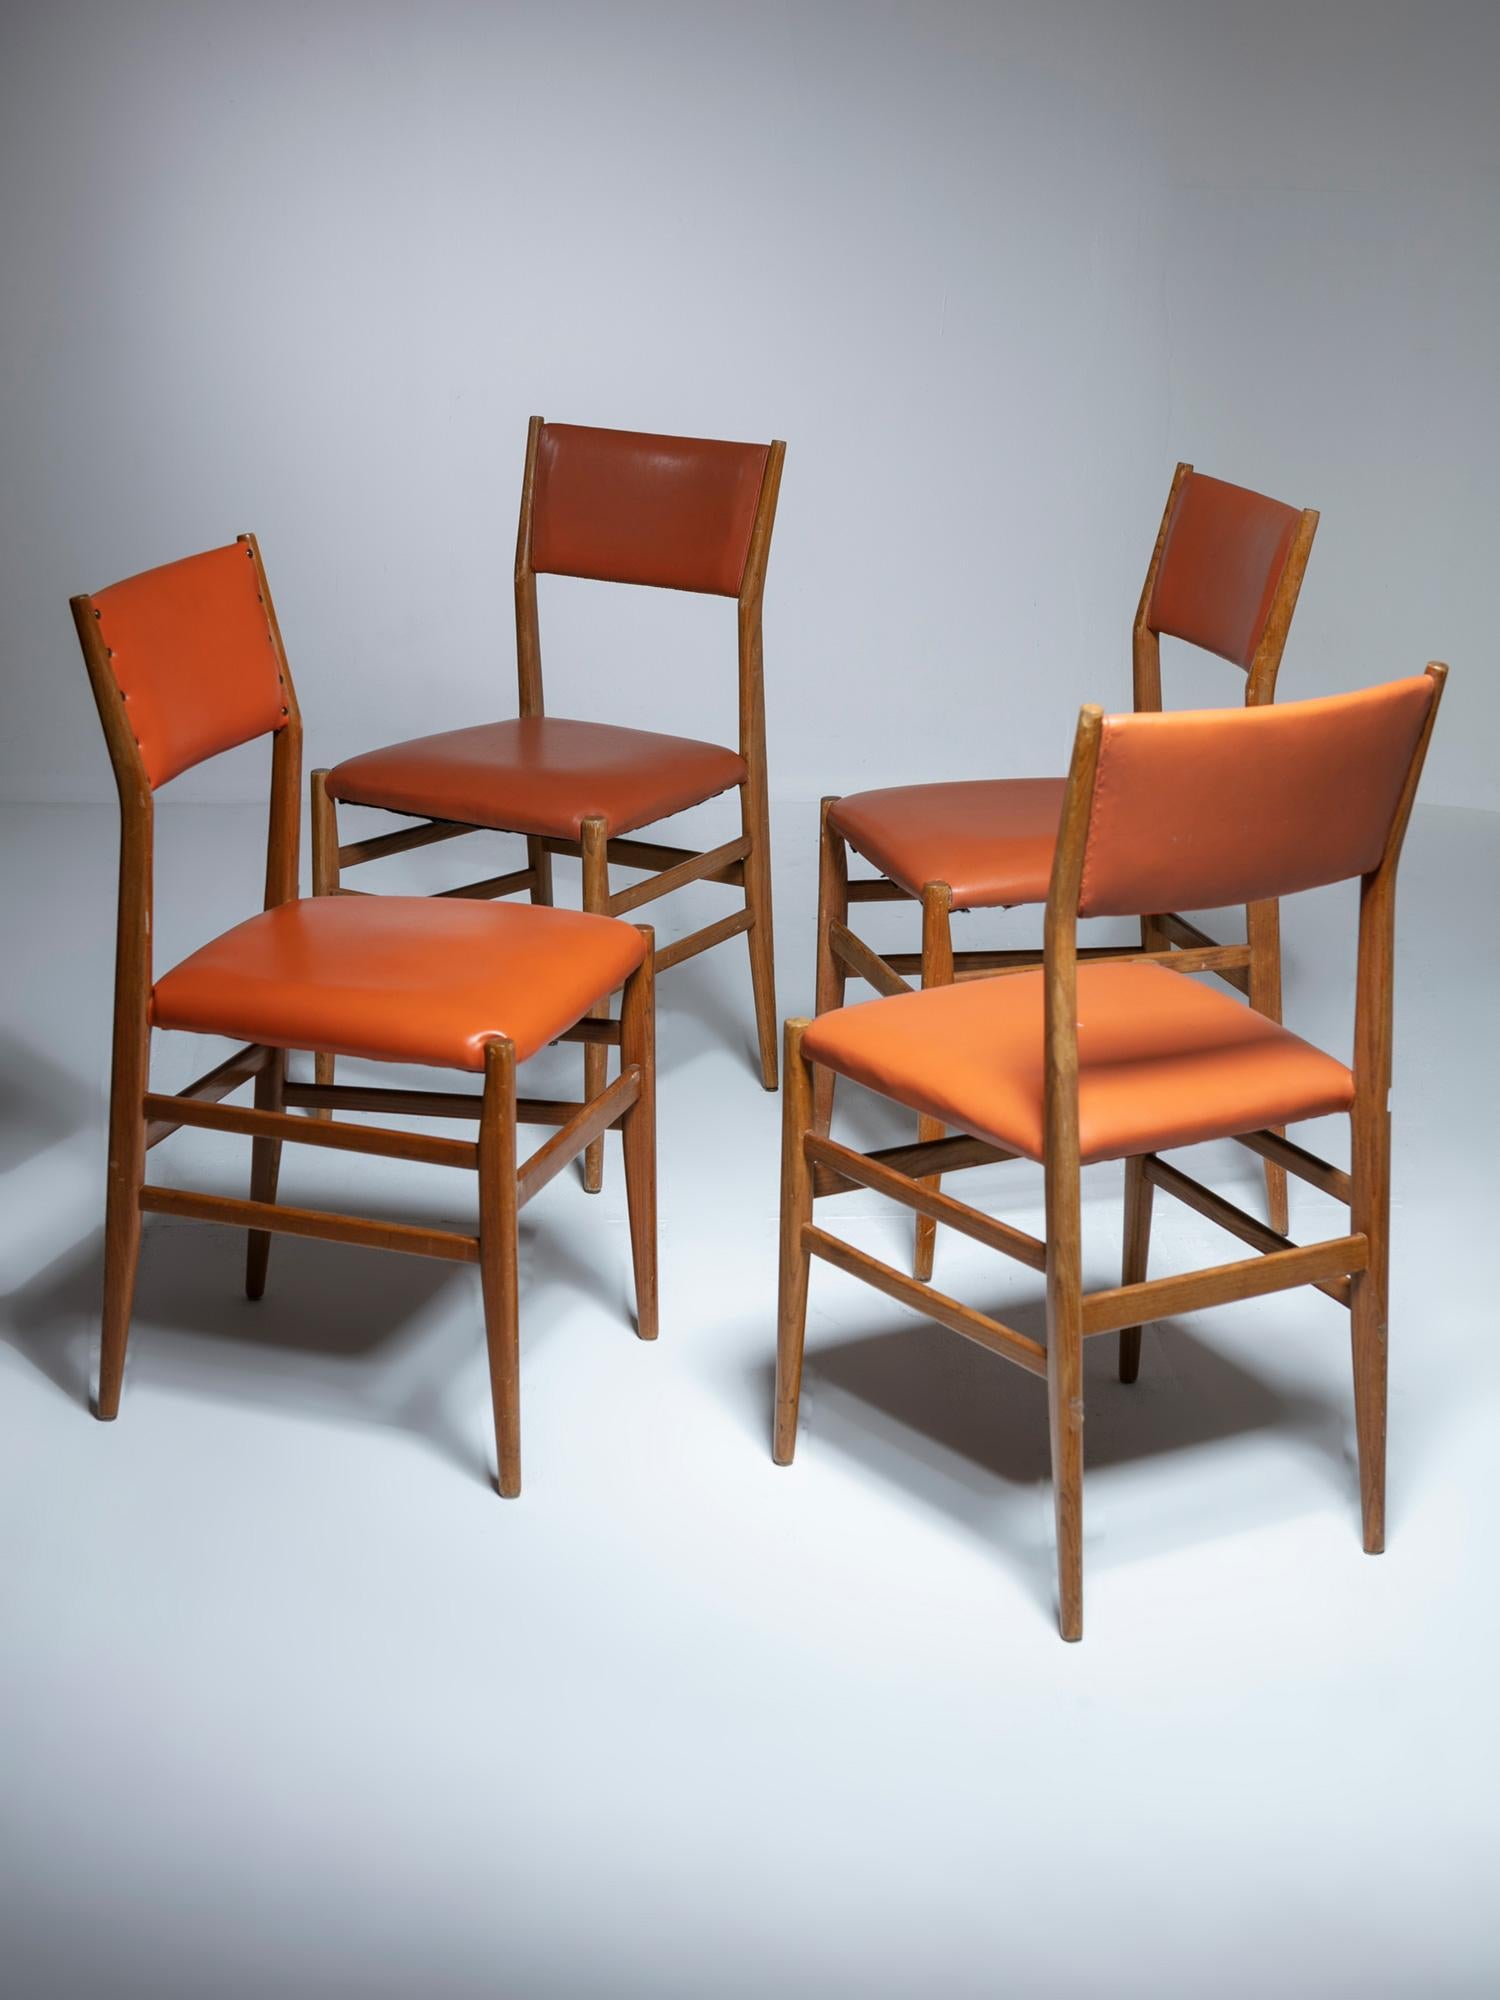 Quatre chaises modèle 646 de Gio Ponti pour Cassina.
Rare version avec dossier rembourré.
L'ensemble comprend trois chaises de la même couleur et la quatrième d'une couleur différente.